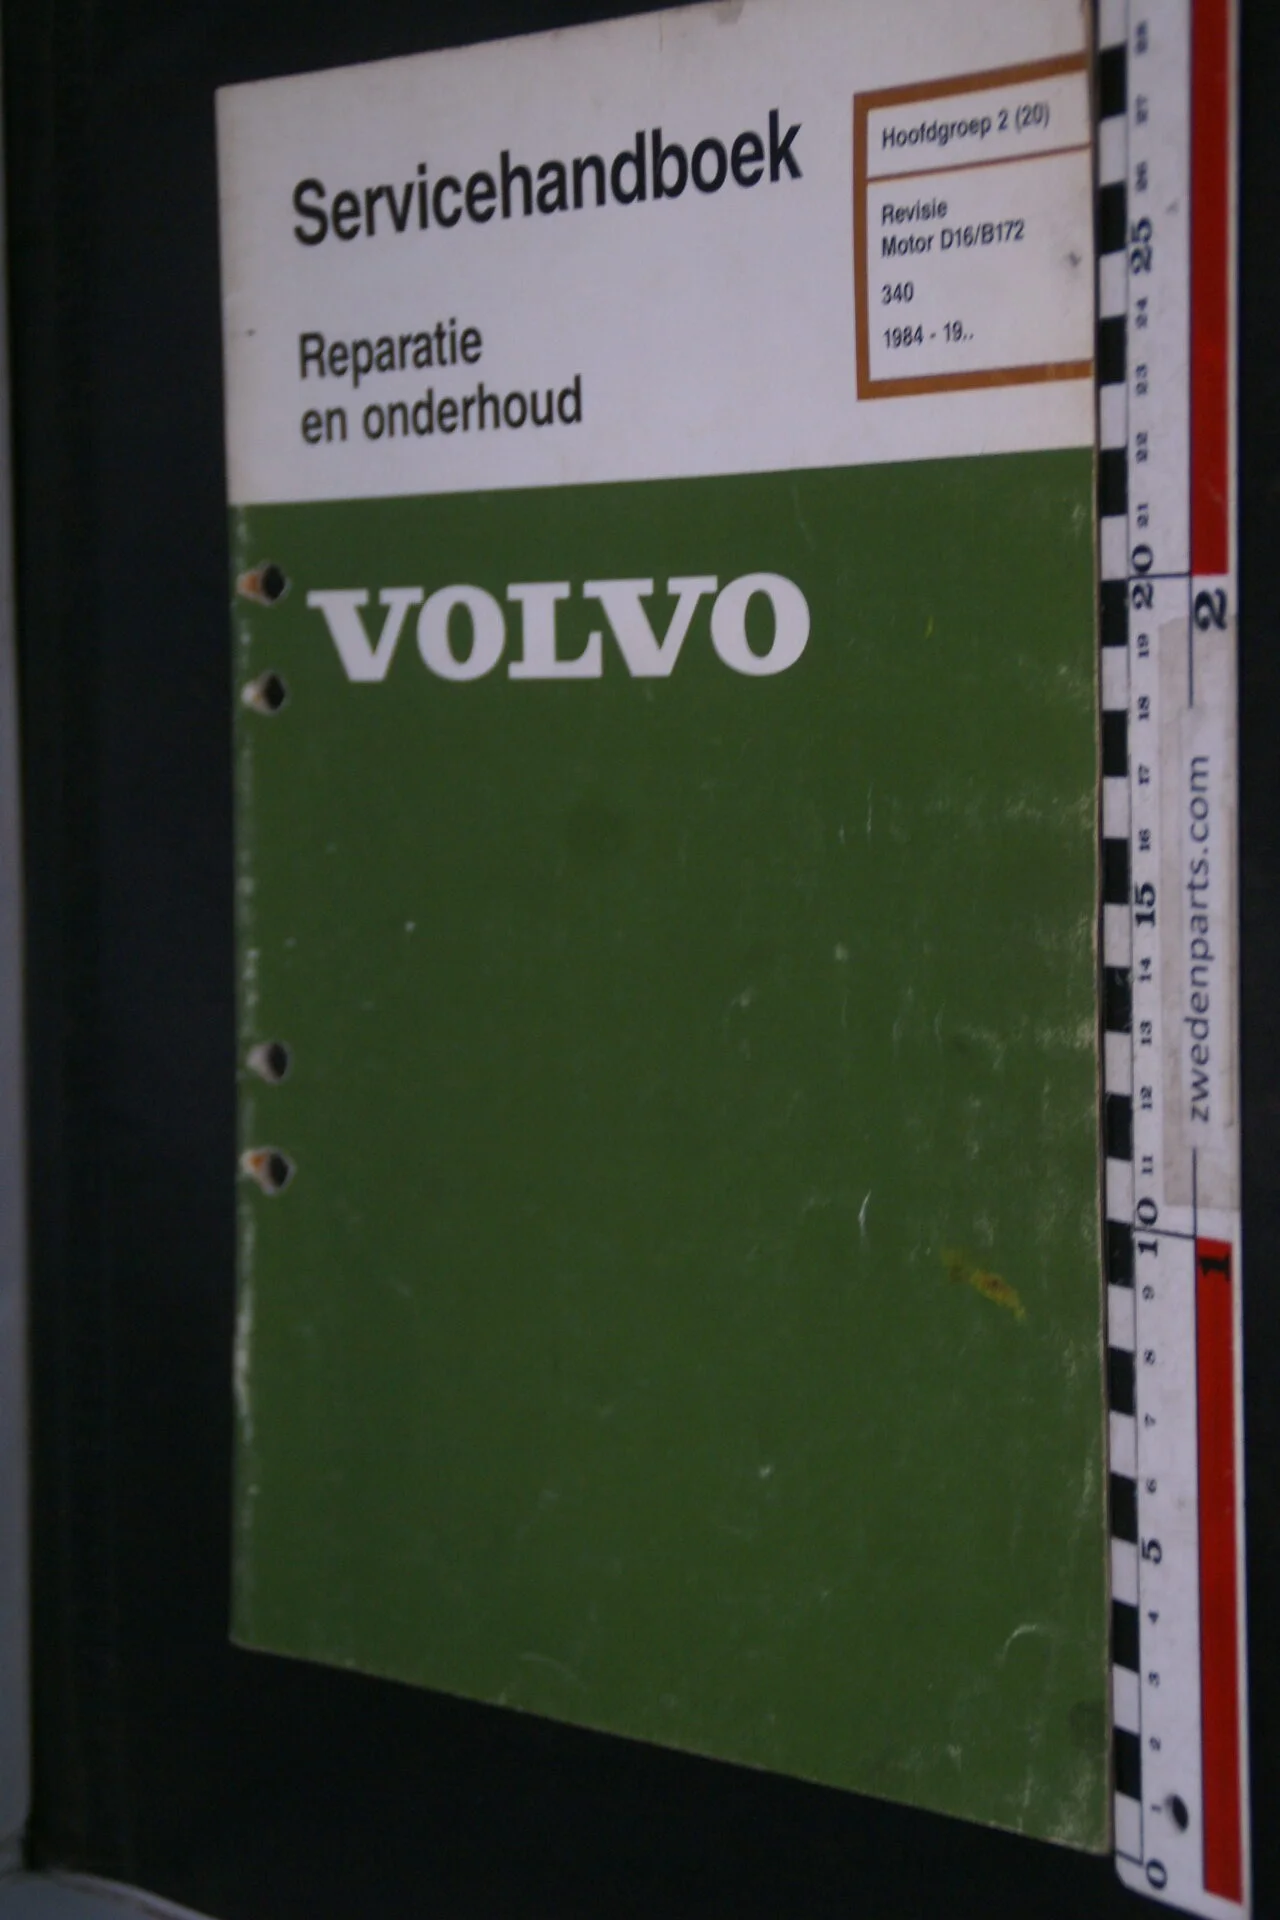 DSC09034 1993 origineel  Volvo 300 servicehandboek motor  B172  1 van 1.000 nr TP 35284-1